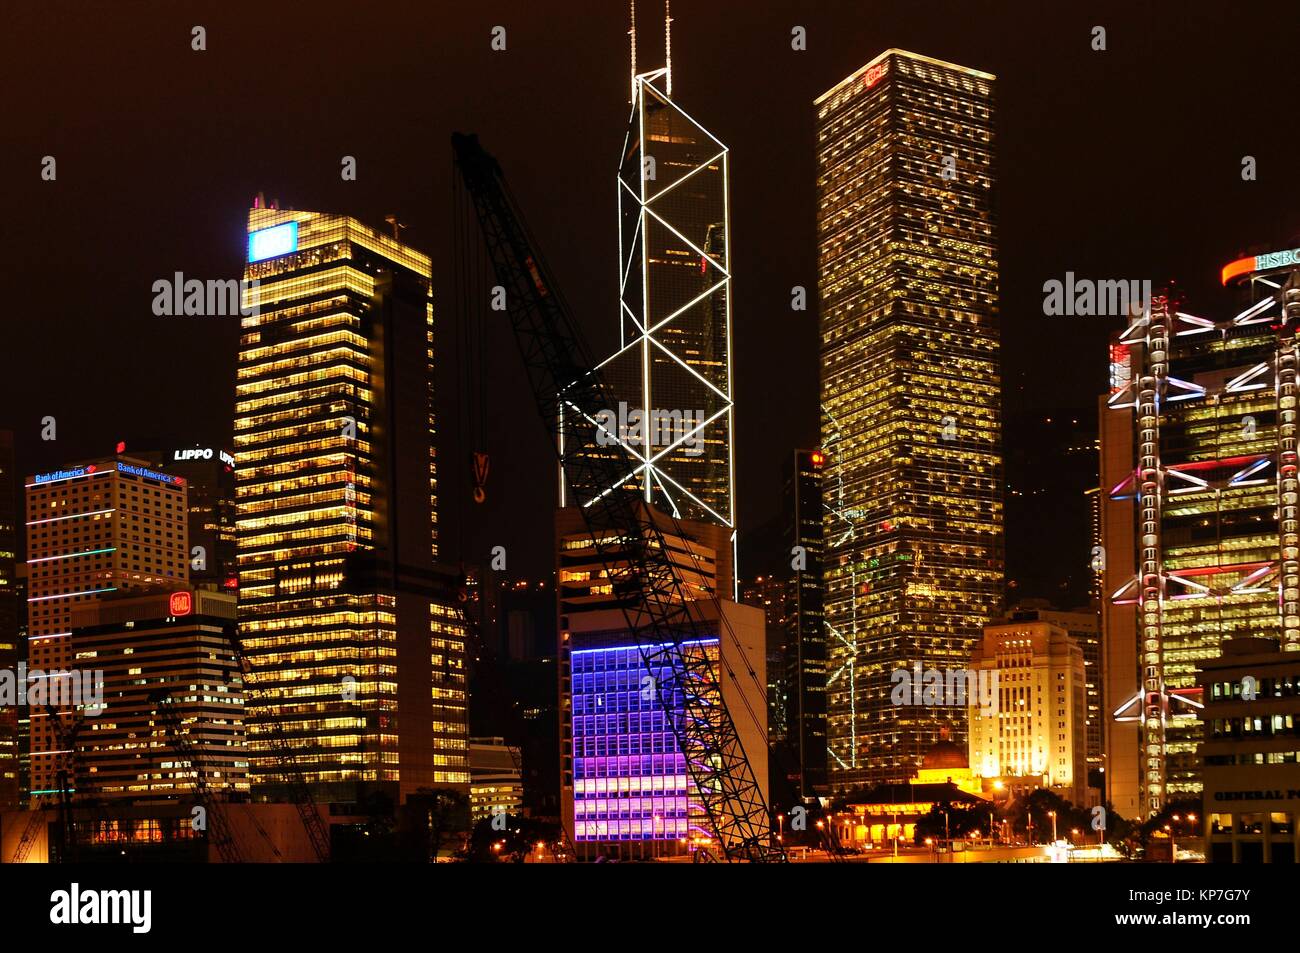 Central district at night (Bank of China, Citibank, Legislative Council, HSBC Bank), Hong Kong Island, Hong Kong, China, East Asia Stock Photo